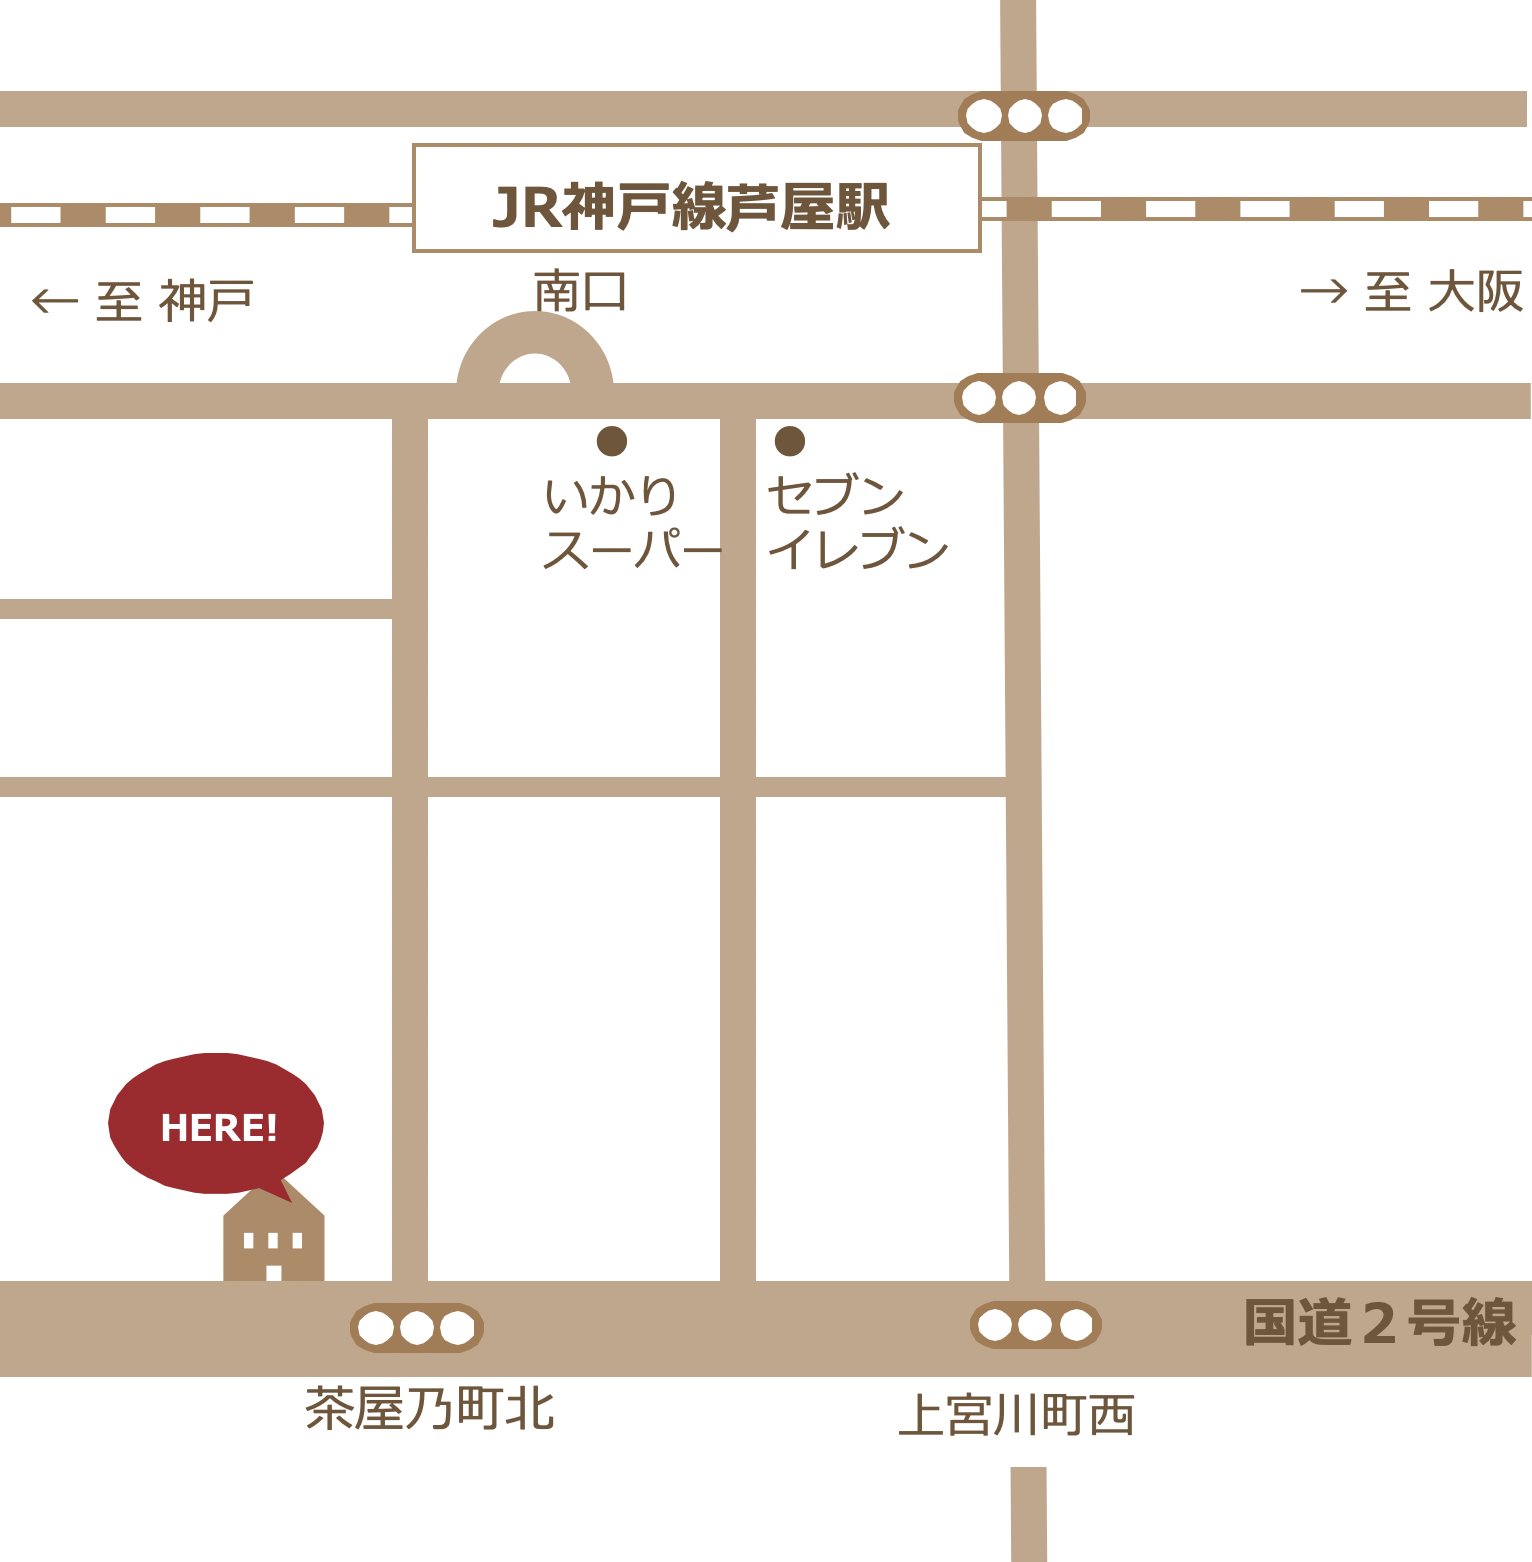 JR神戸線芦屋駅南口から徒歩3分